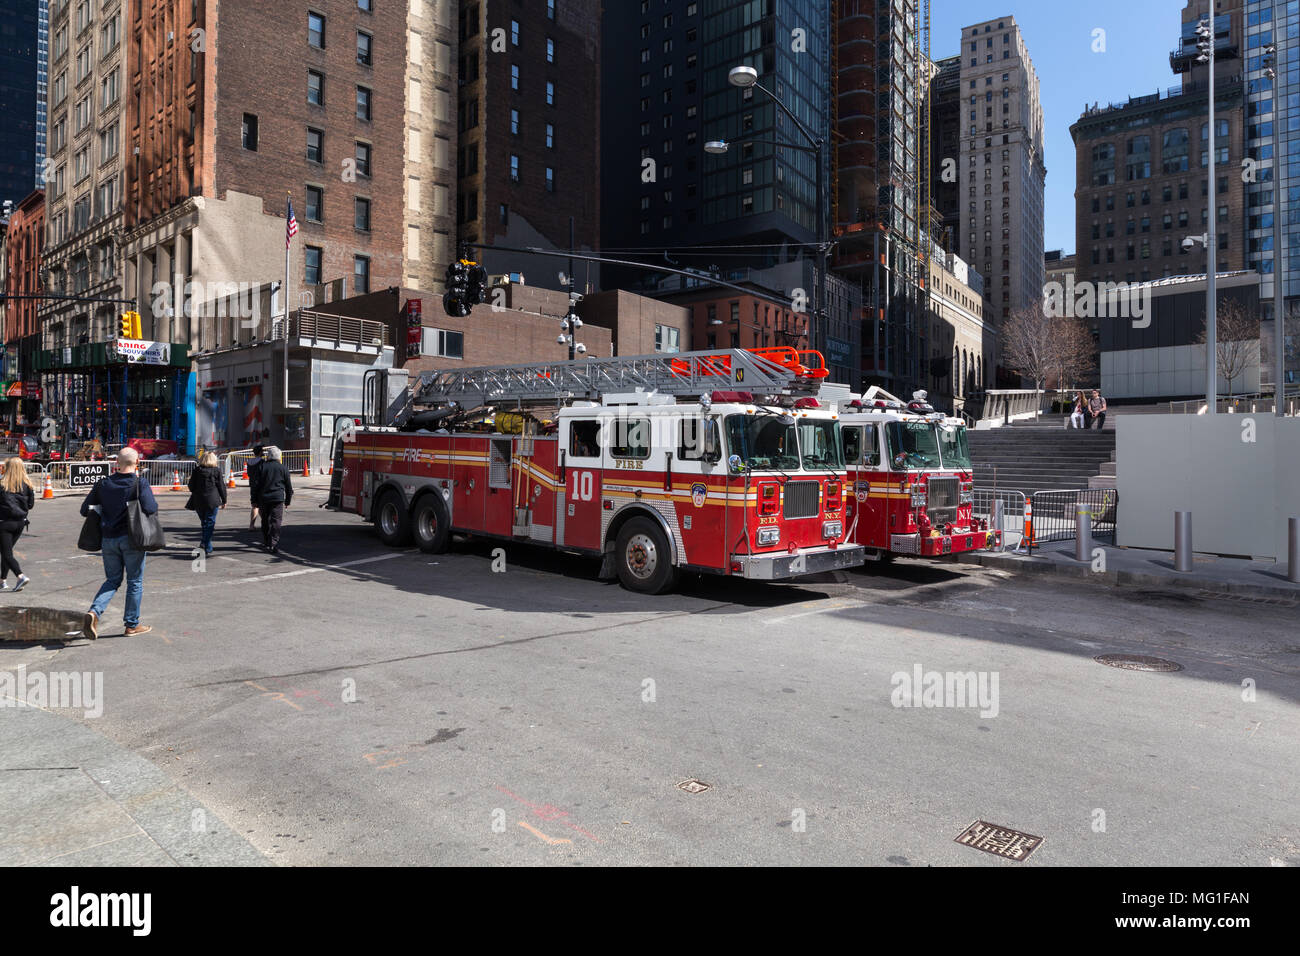 Two FDNY Fire Trucks parked at World Trade Center, New York, NY 2018 Stock Photo